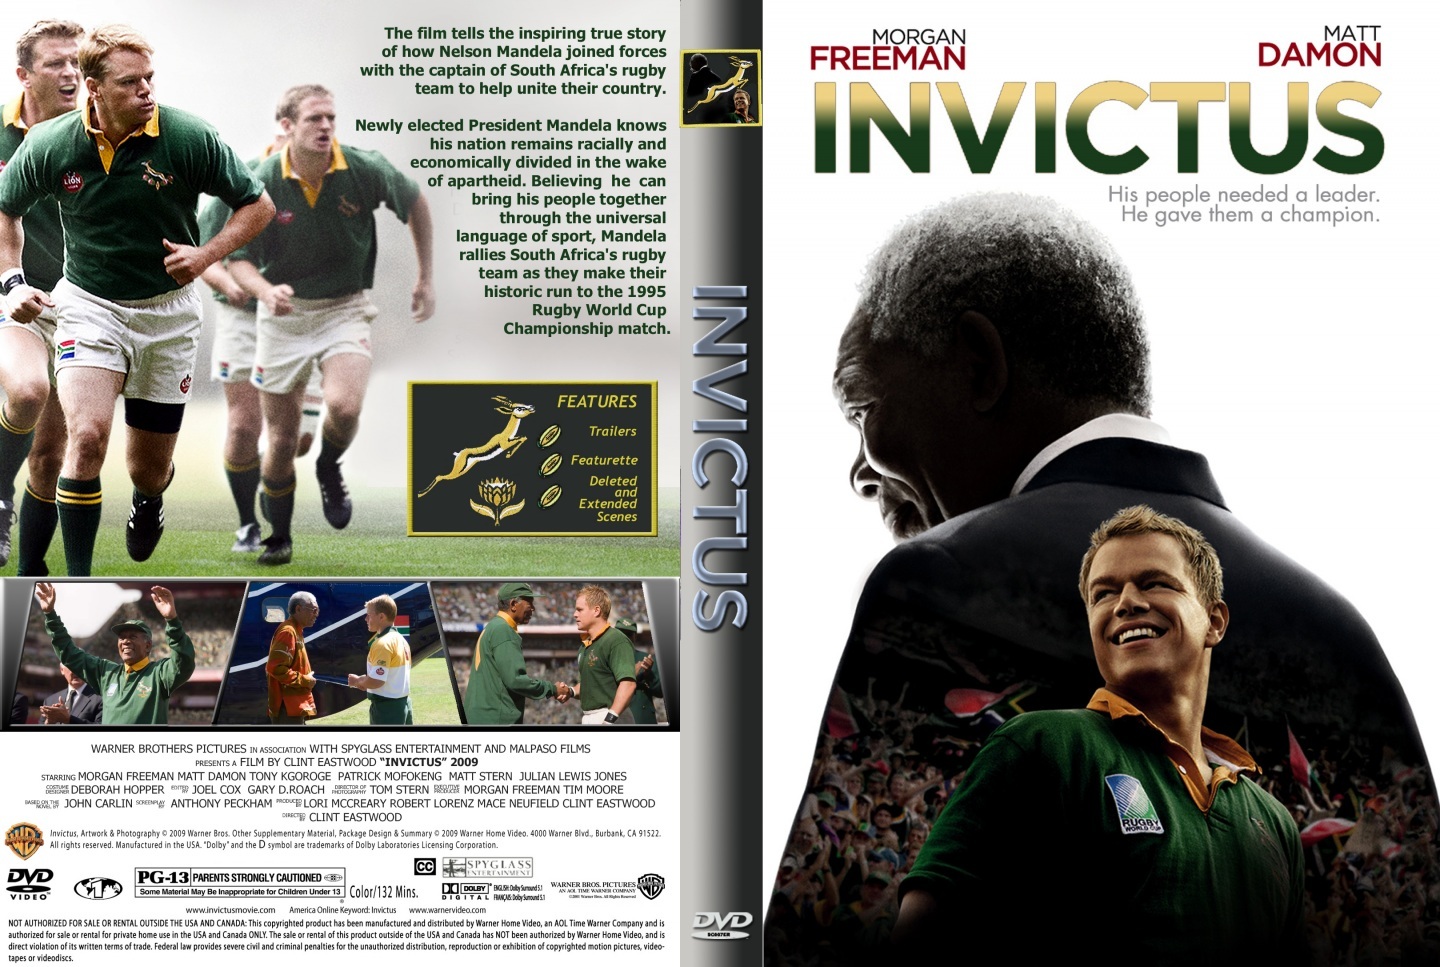 Invictus (2009) Morgan Freeman